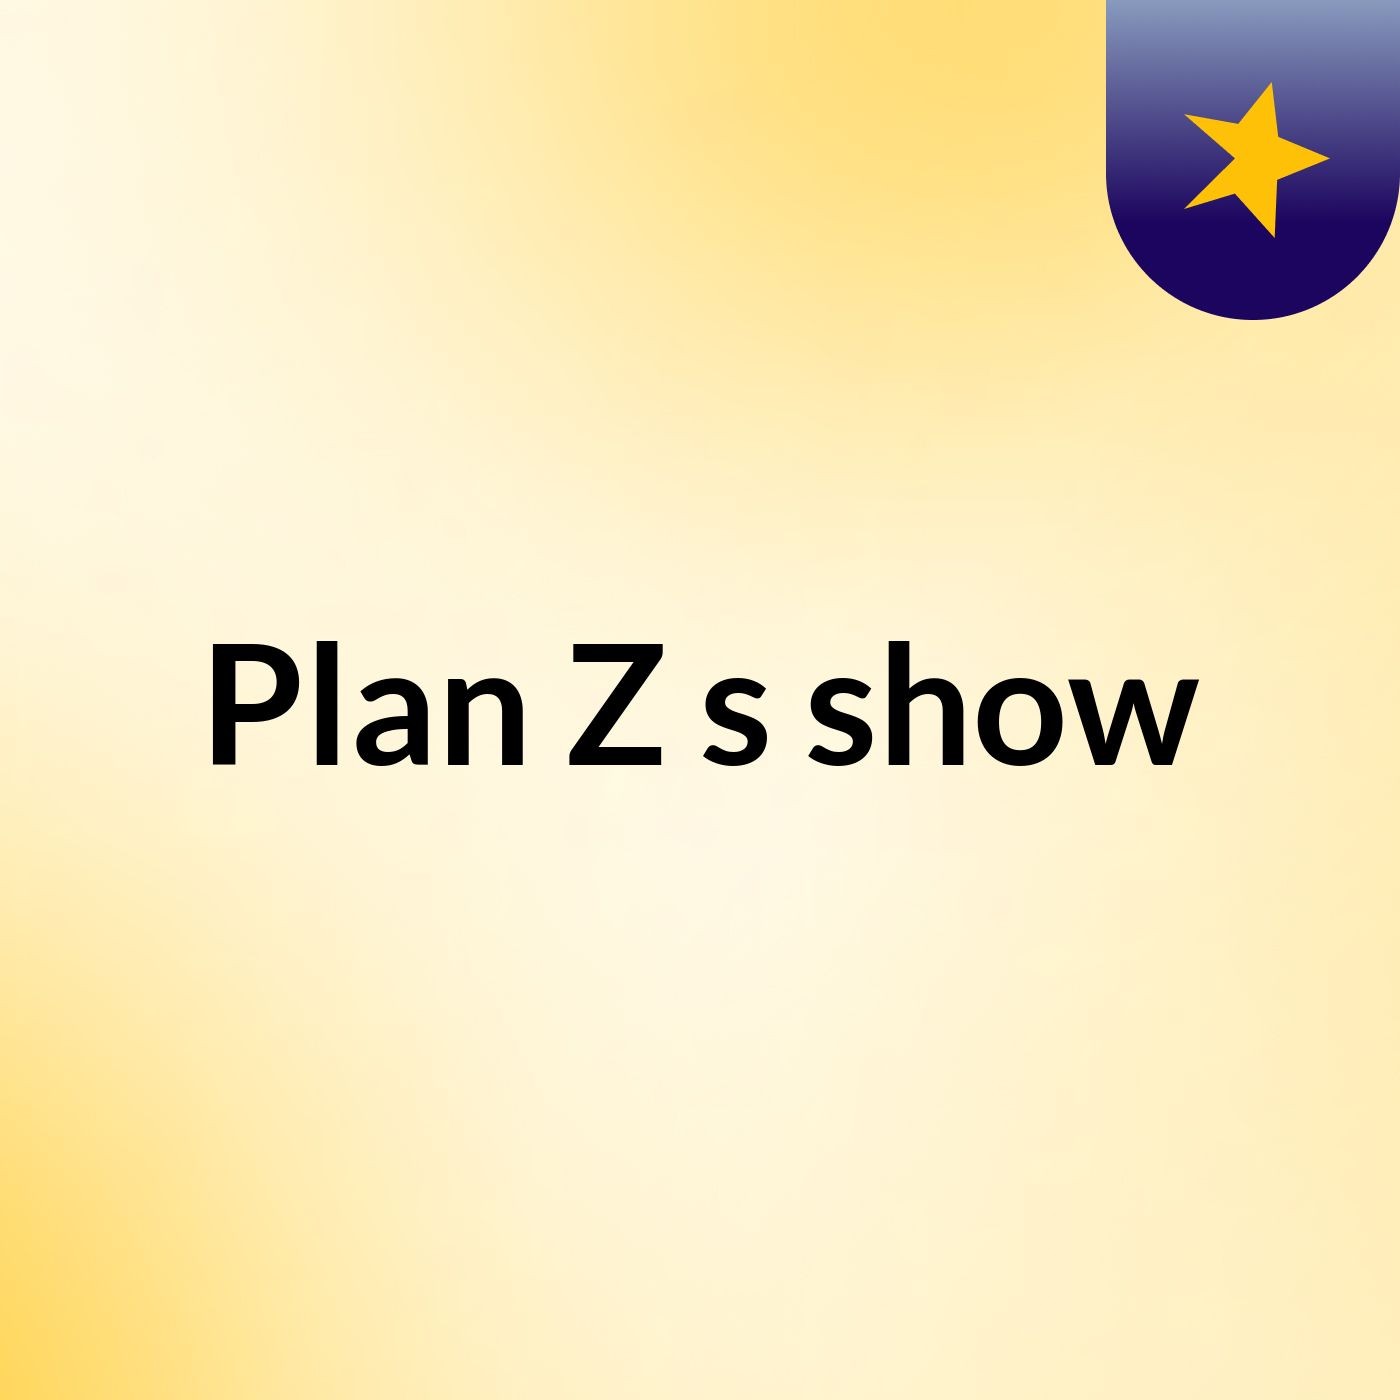 Plan Z's show